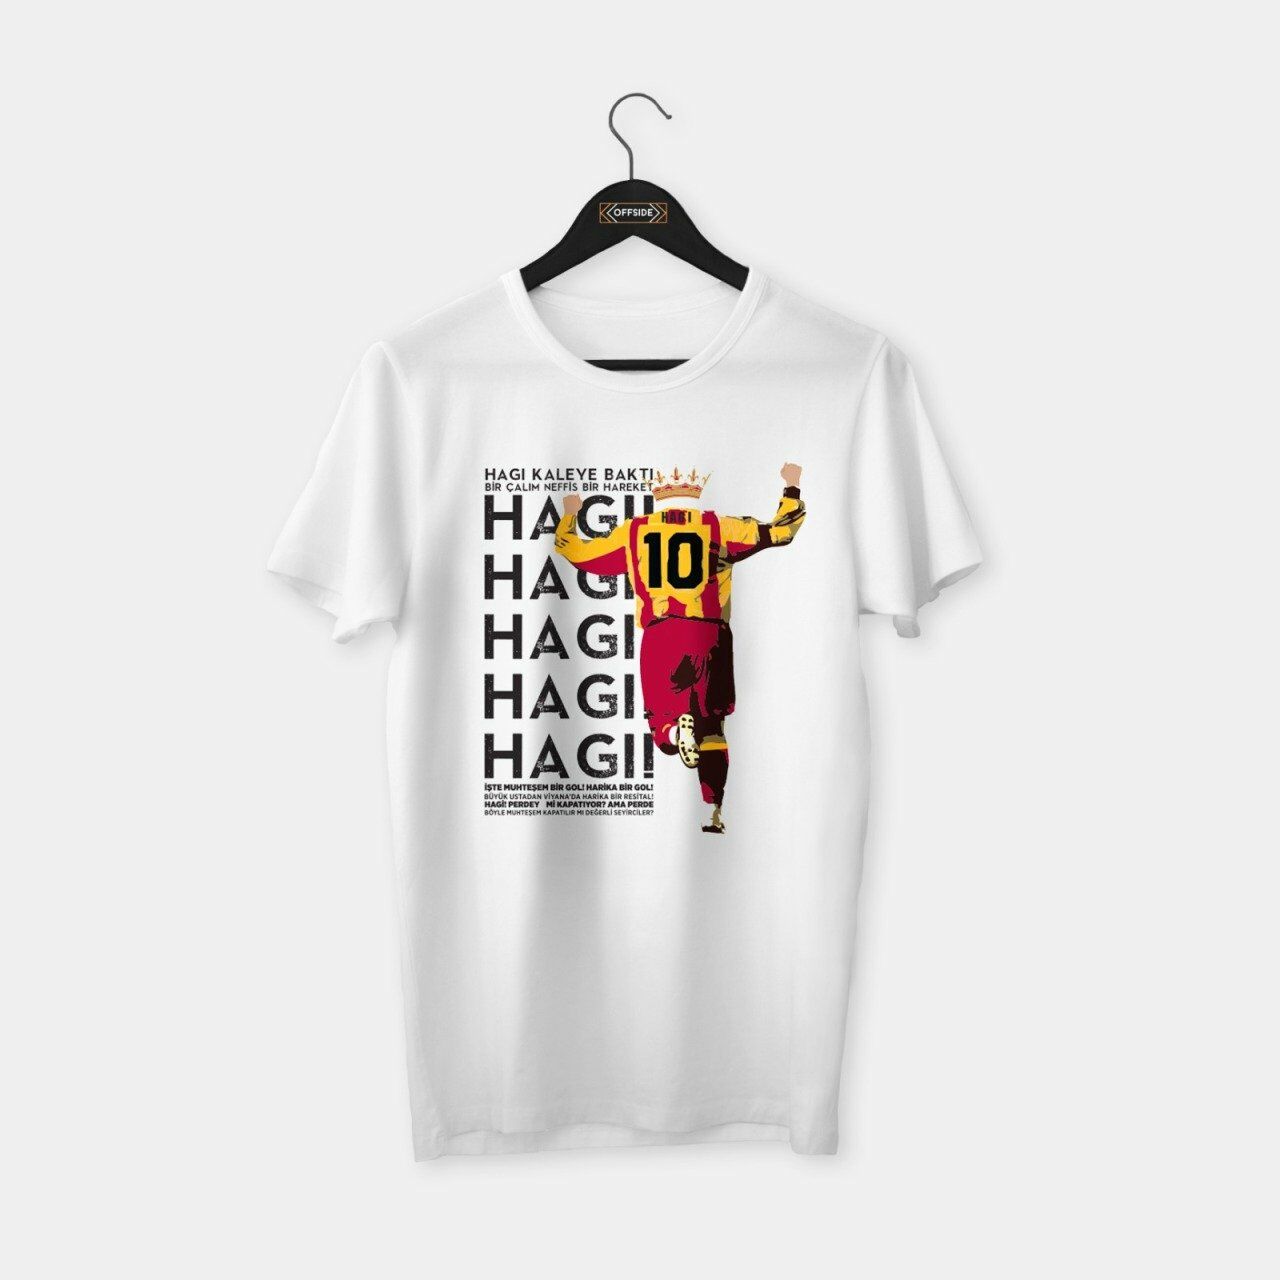 Gheorghe Hagi Baskılı Beyaz T-shirt